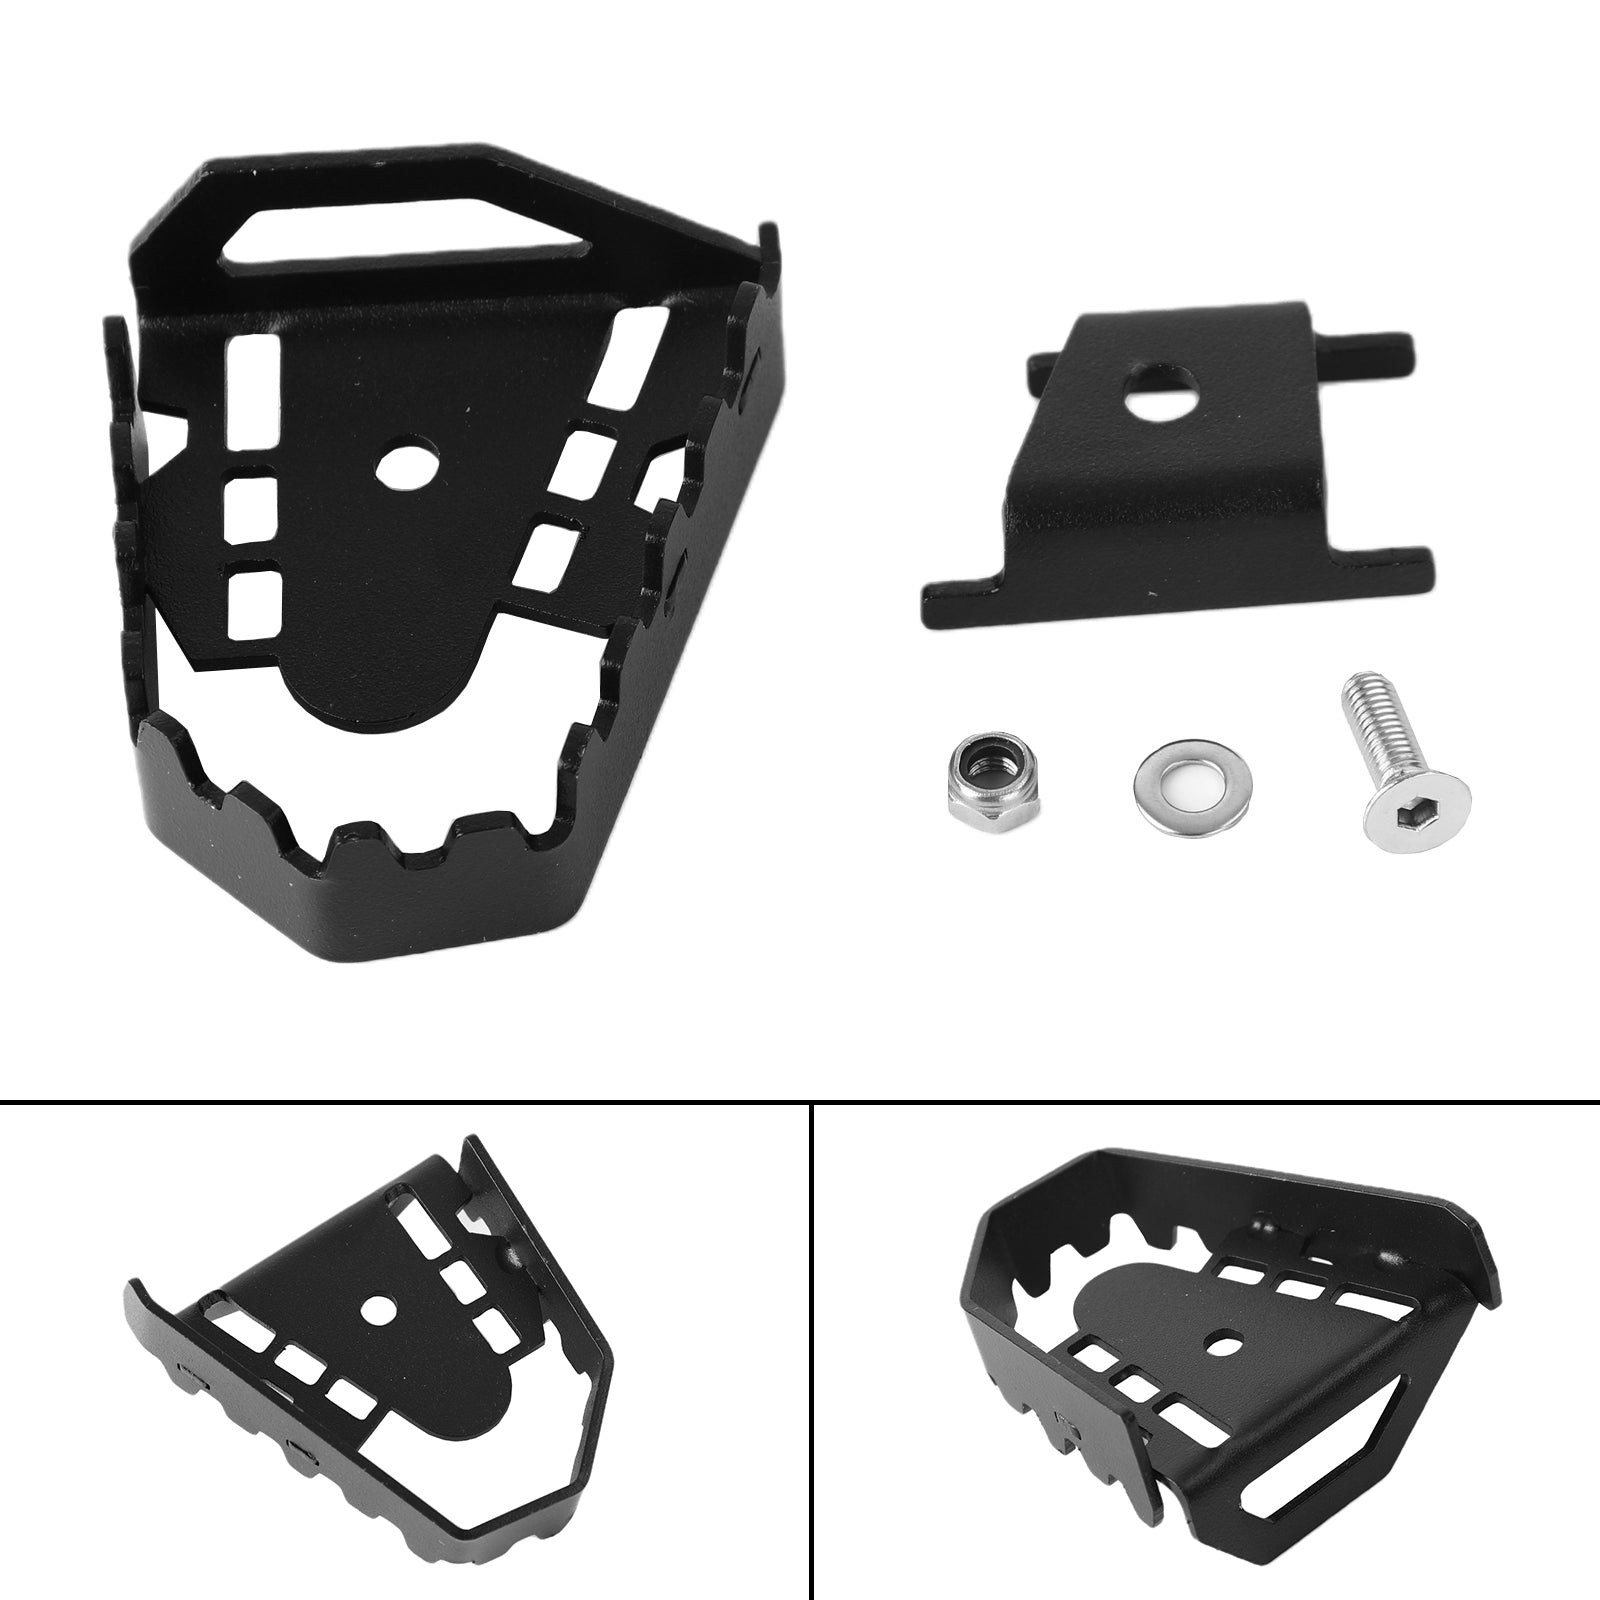 Ingranditore pedale estensione pedale freno in alluminio per F850Gs F750Gs 08-16 09 Argento generico